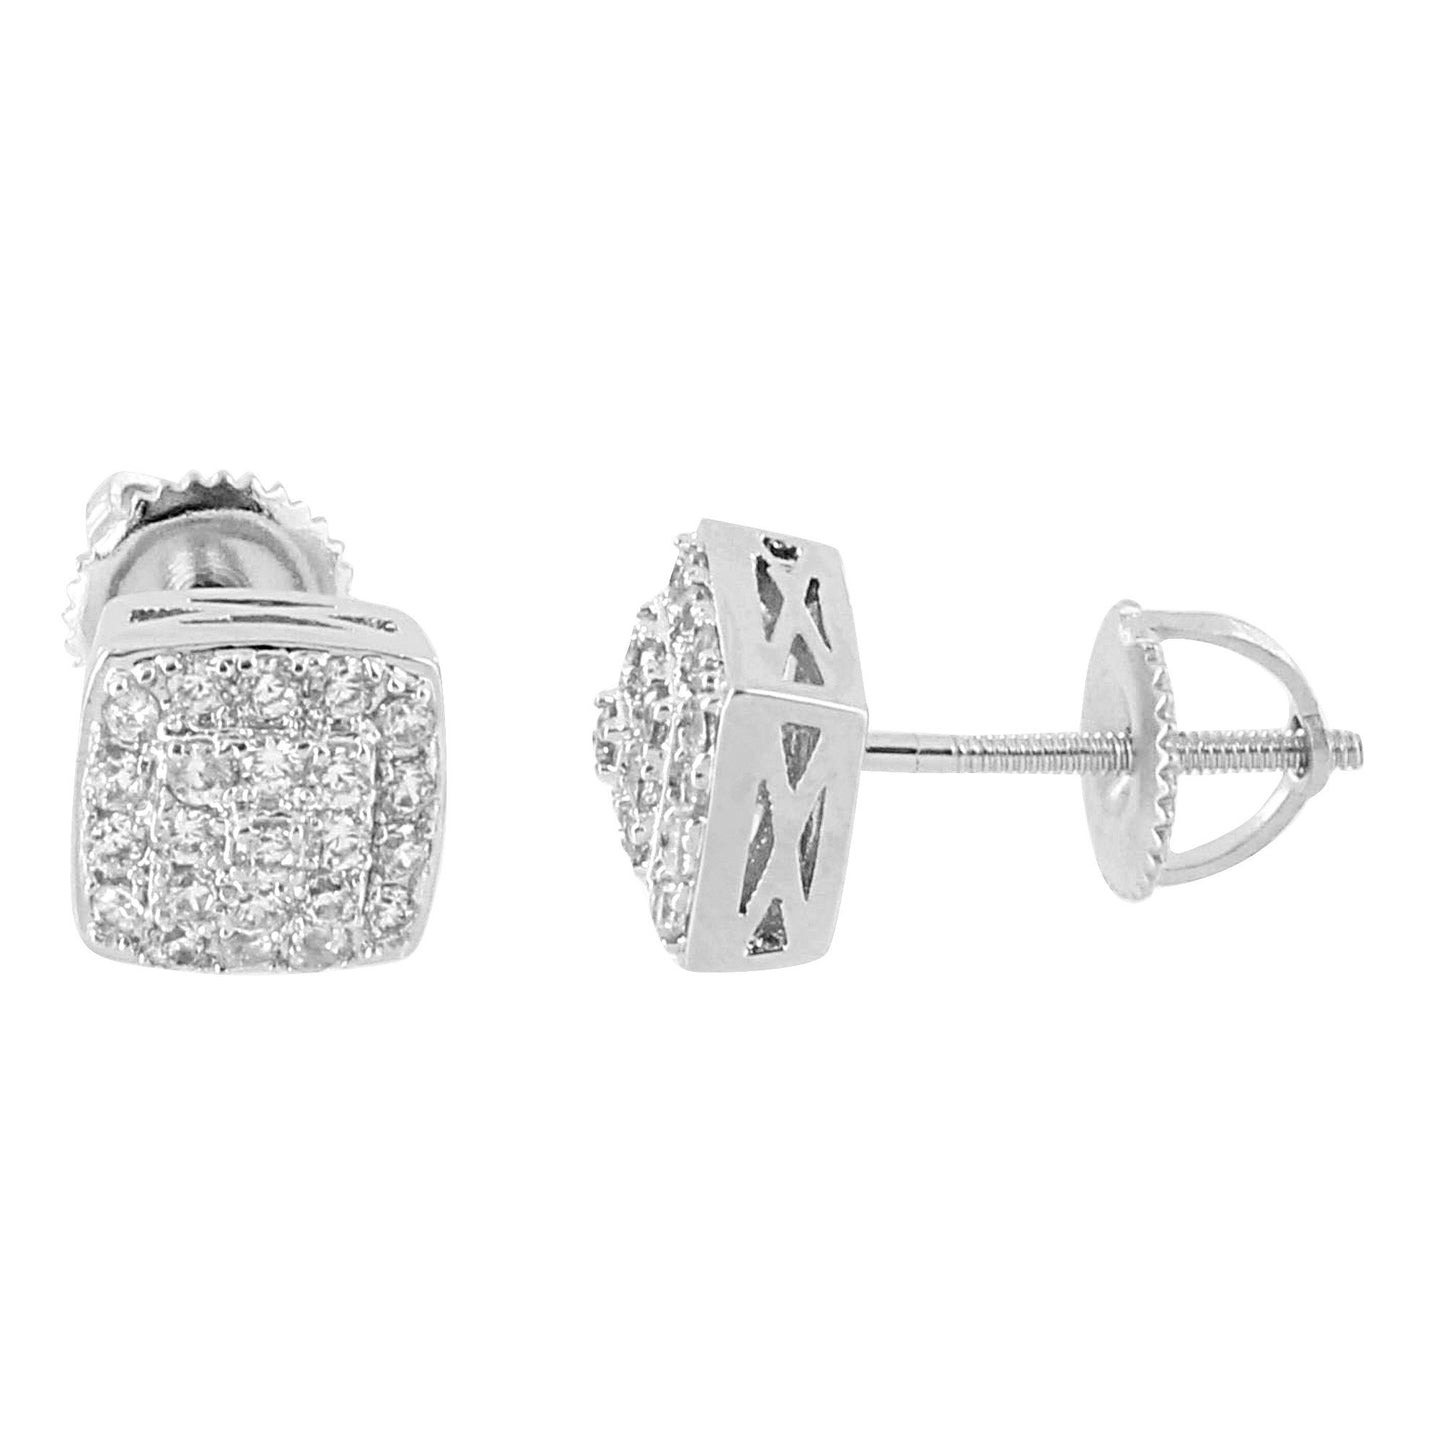 Square Designer Earrings Bling Lab Diamonds 14K White Gold Finish Screw On Studs